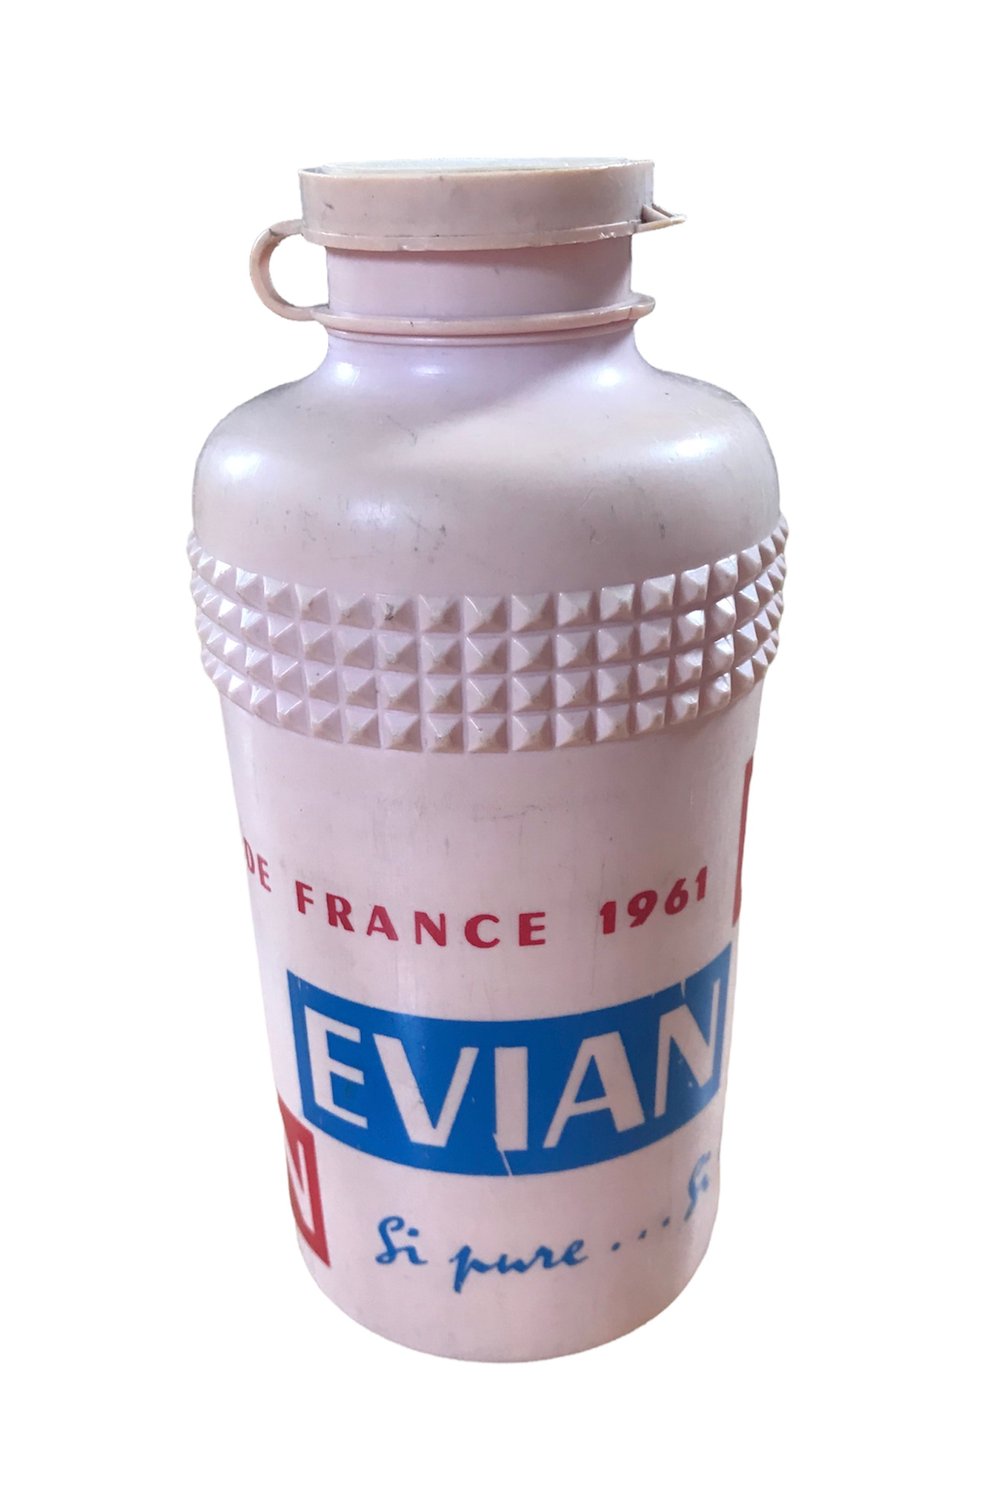 1961 - Tour de France / Evian Water Bottle - Pink version